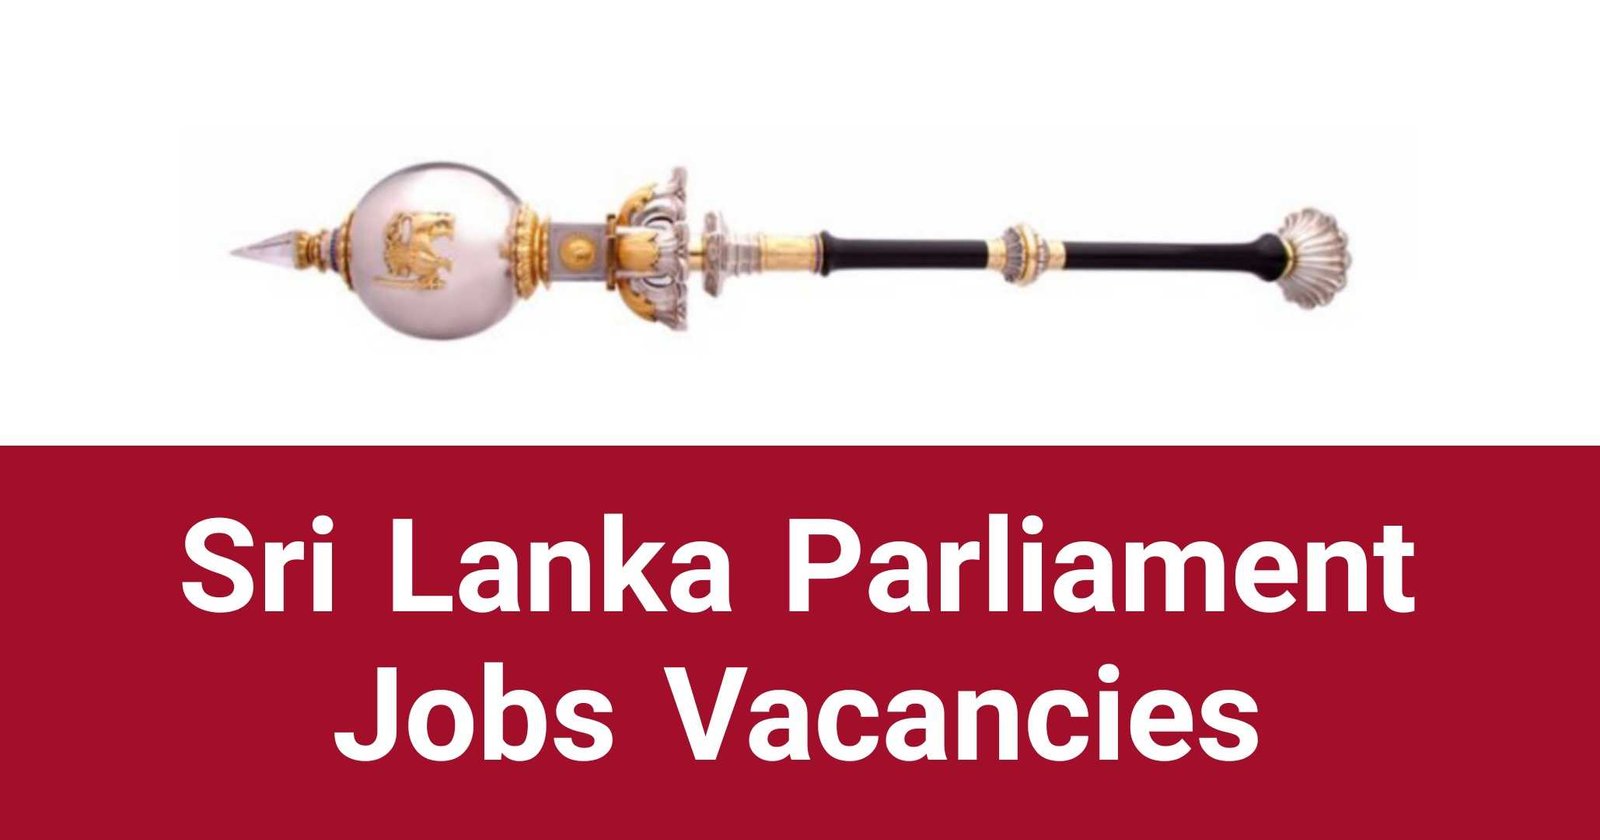 Sri Lanka Parliament Jobs Vacancies Recruitments